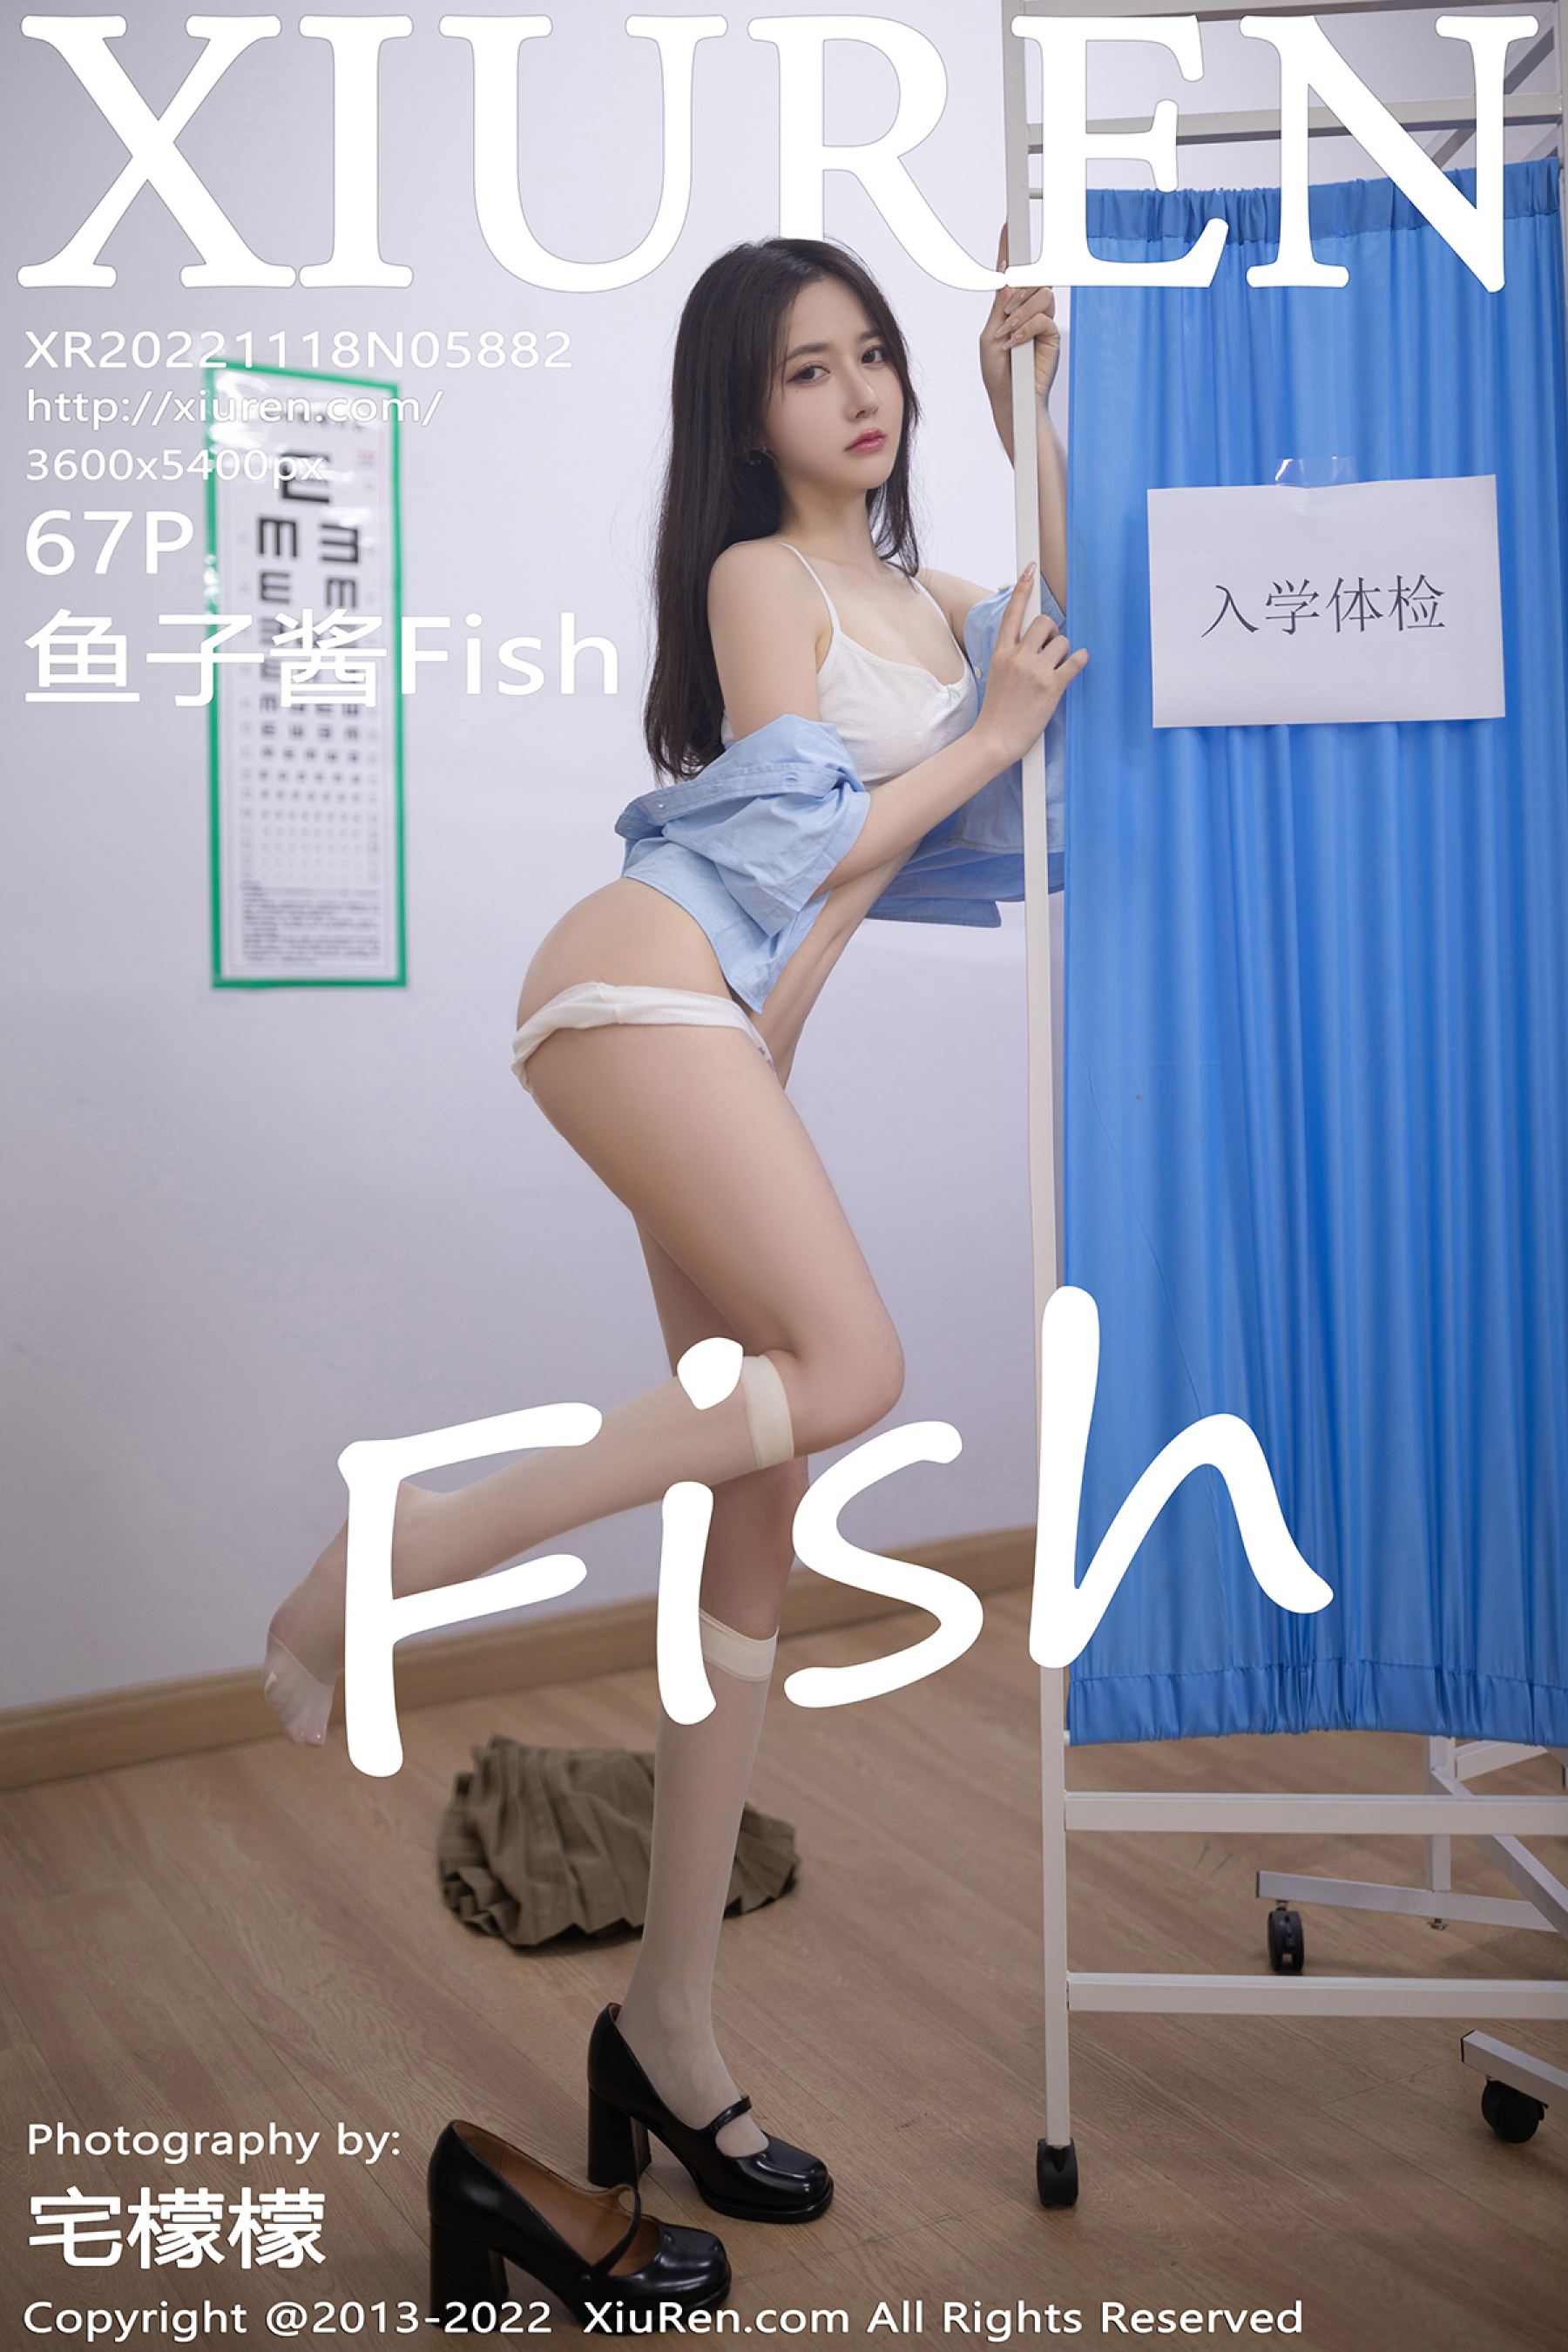 Vol. 5882 Caviar Fish 